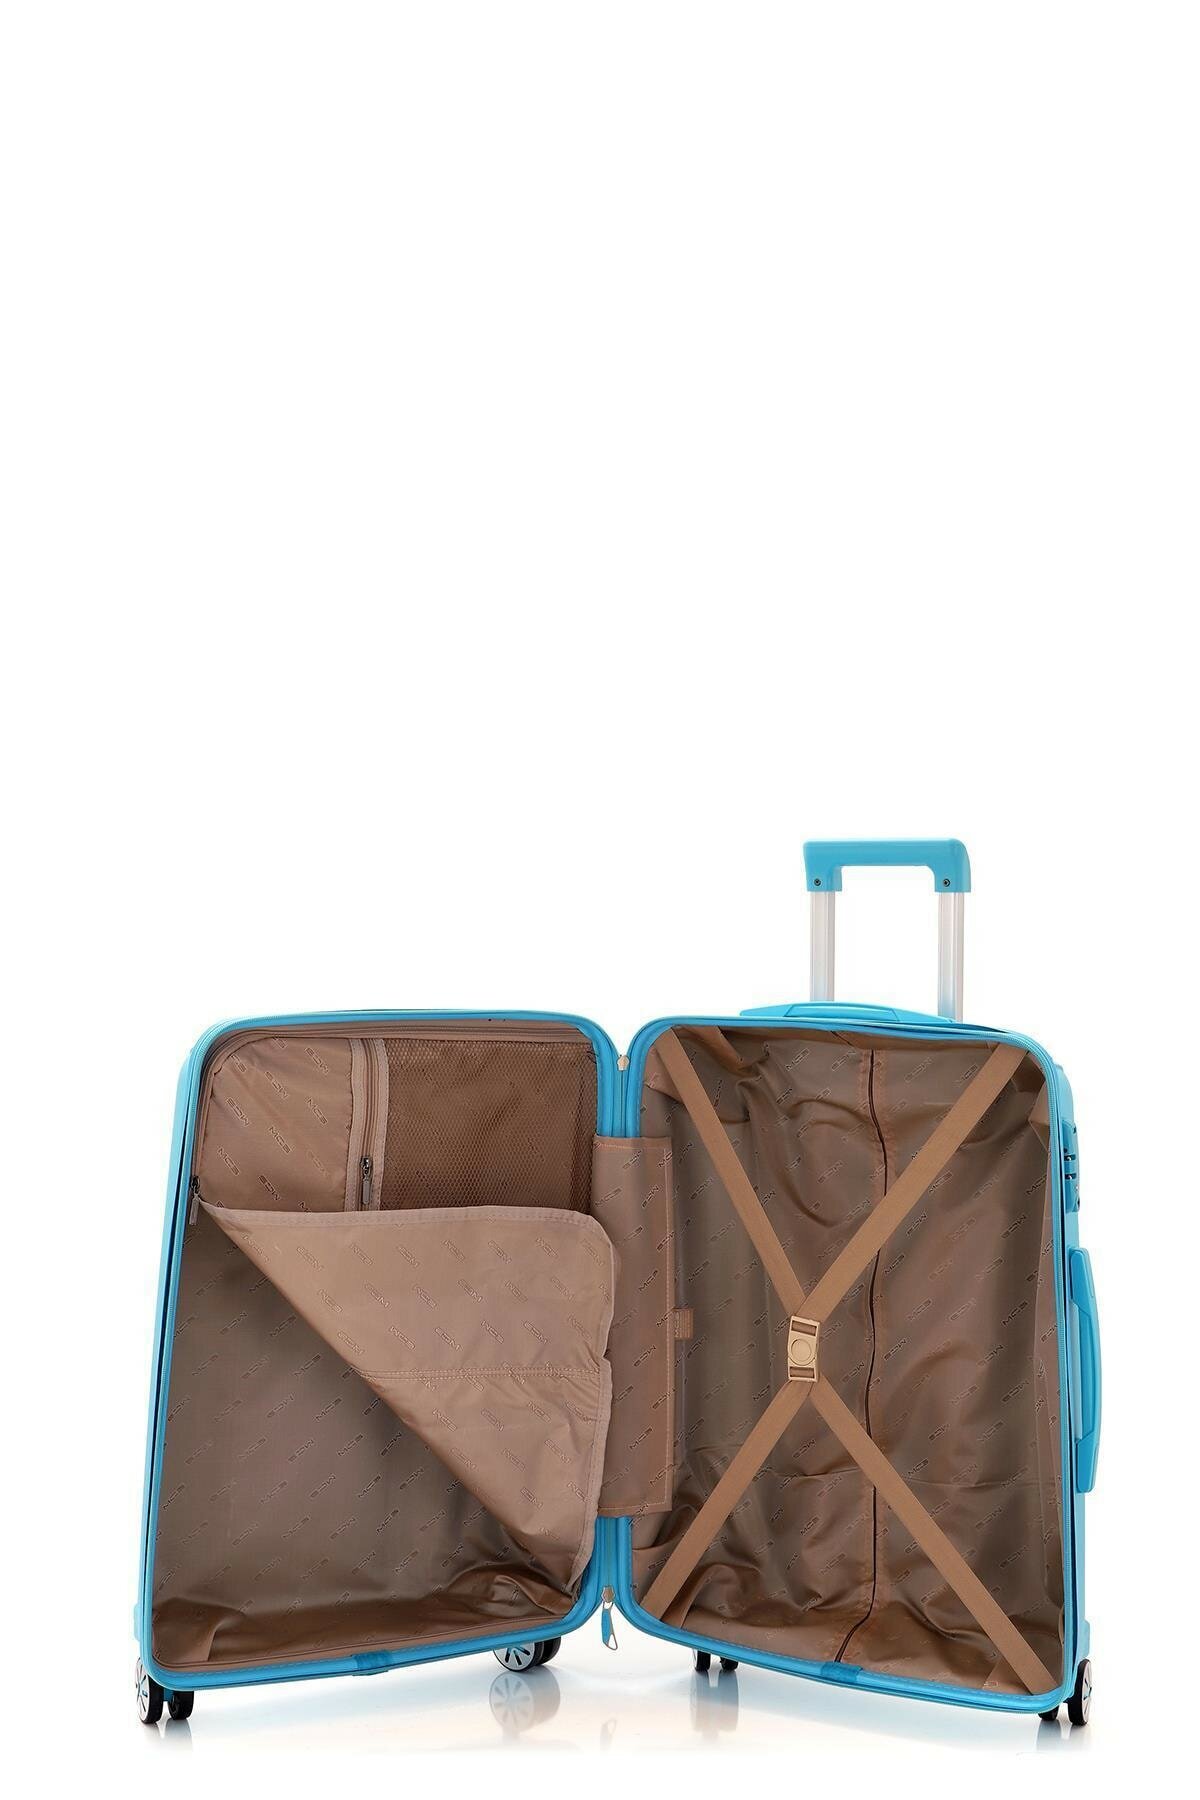 Средний чемодан из полипропилена MCS V305 M L. BLUE! Для 18 кг! - 3